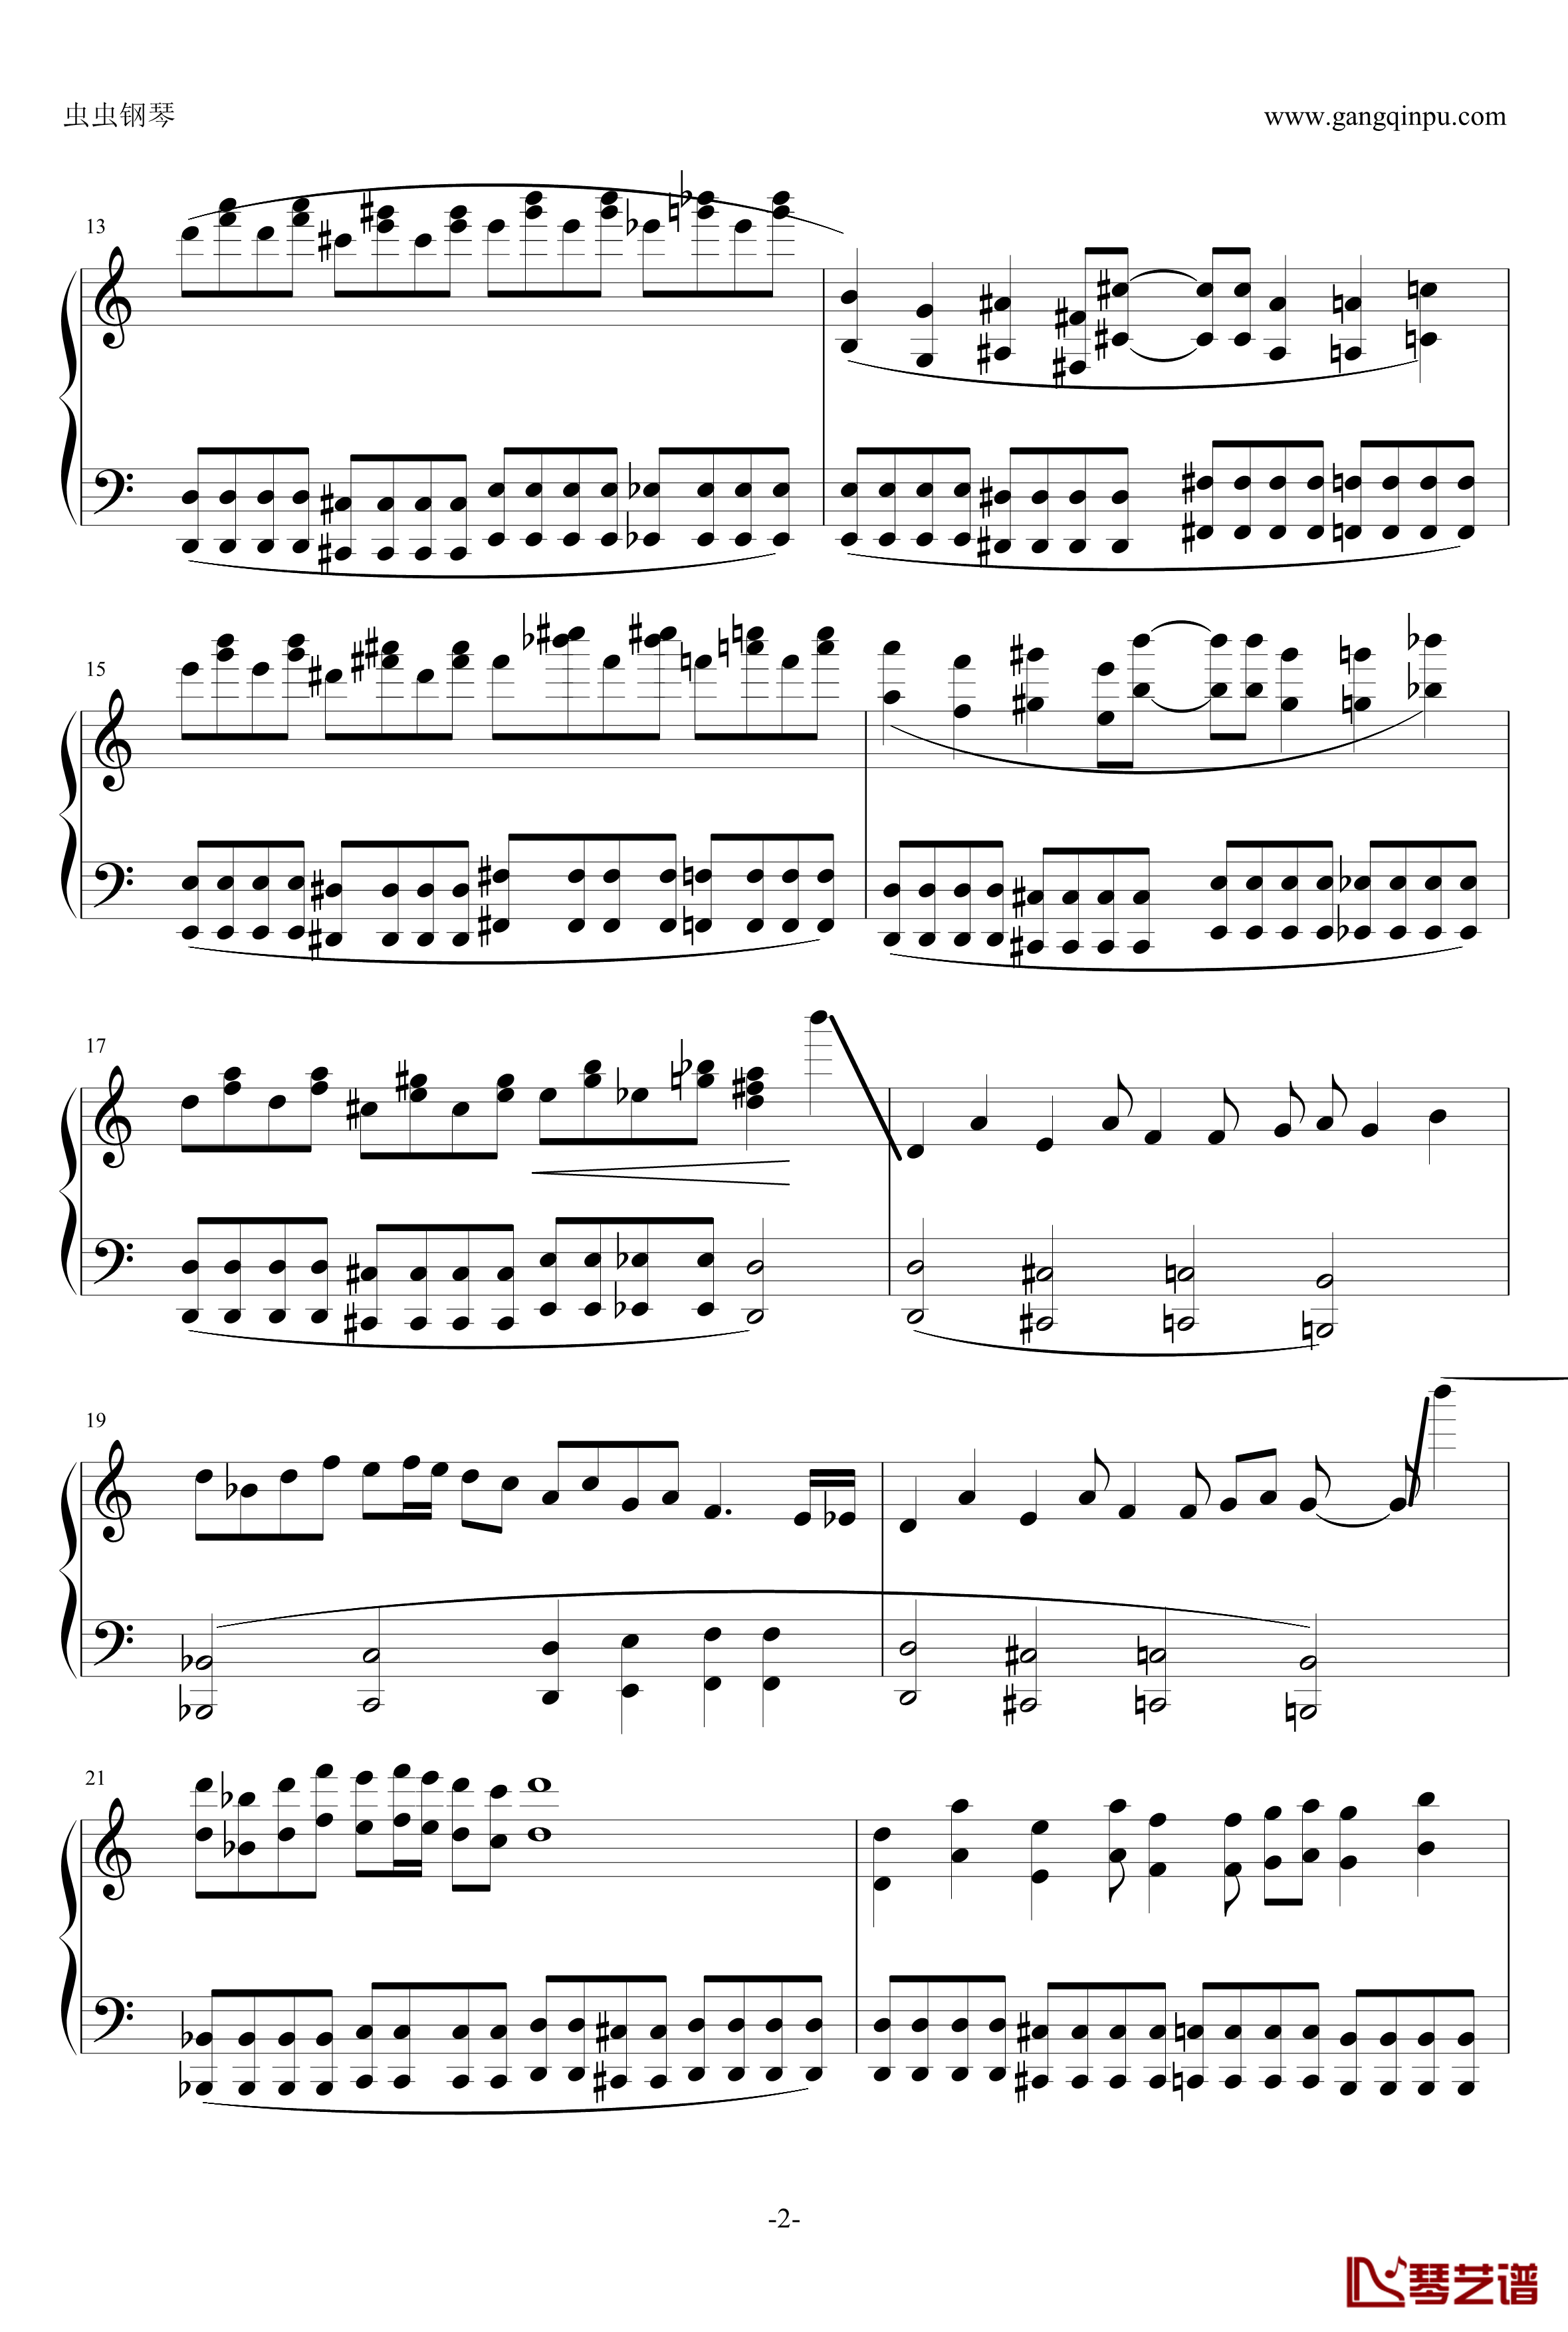 死亡华尔兹钢琴谱-简单版-人类可以弹-最终鬼畜2